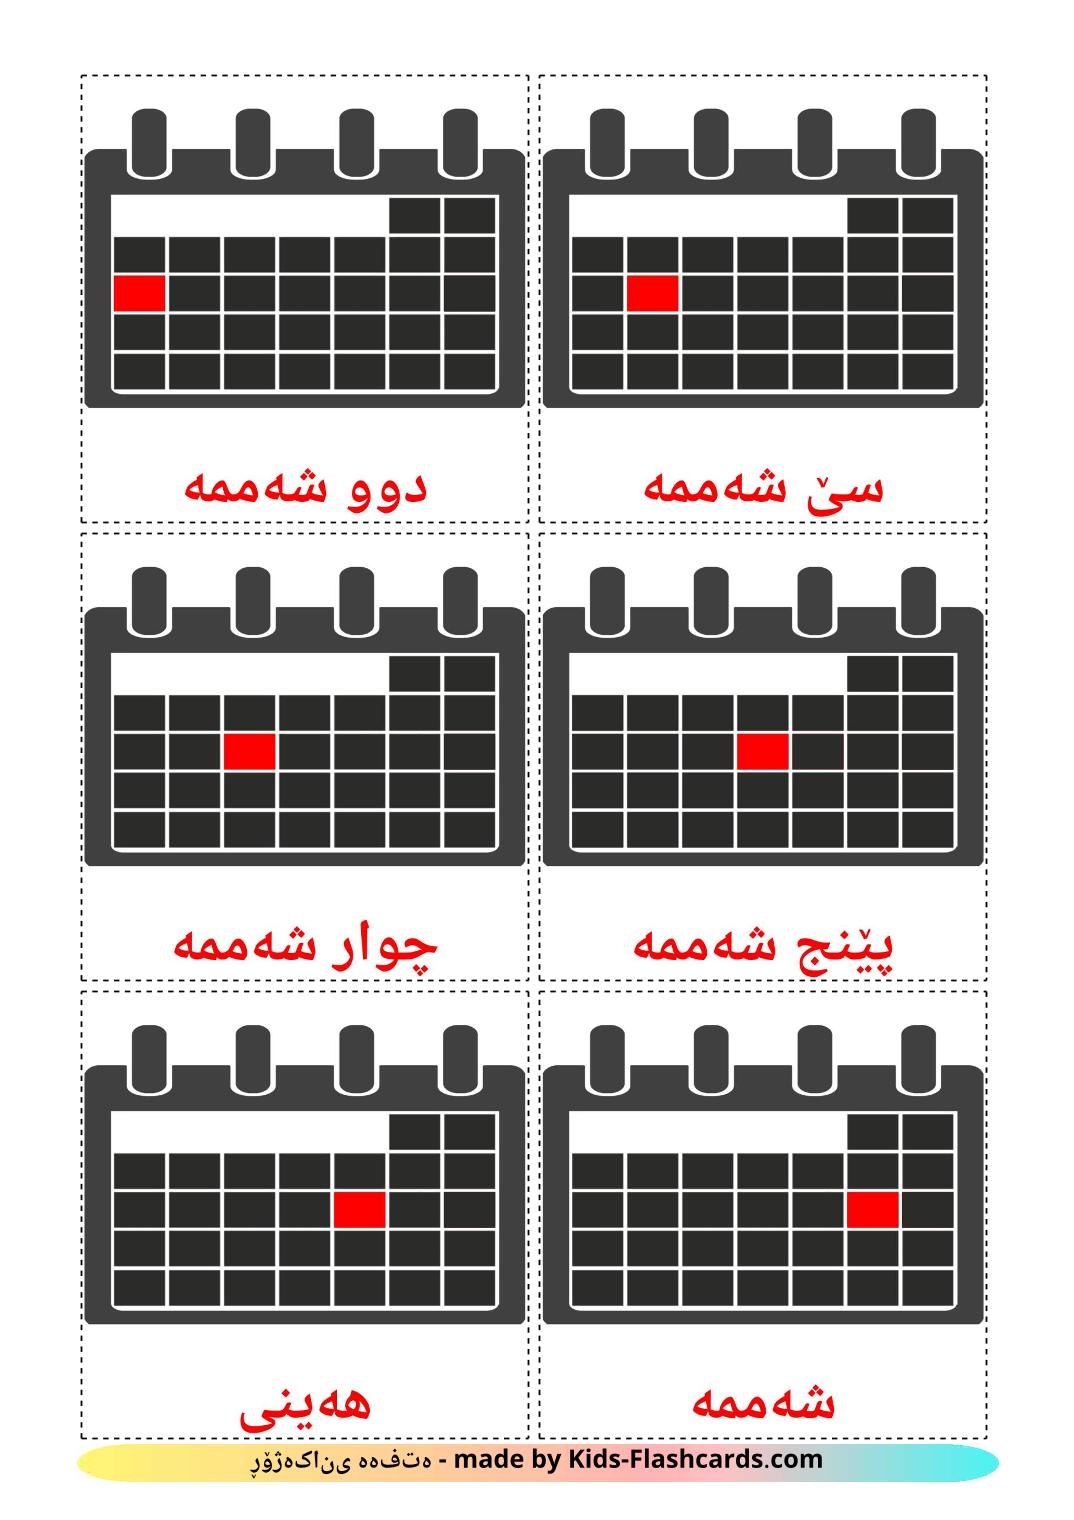 Les Jours de la Semaine - 12 Flashcards kurde(sorani) imprimables gratuitement